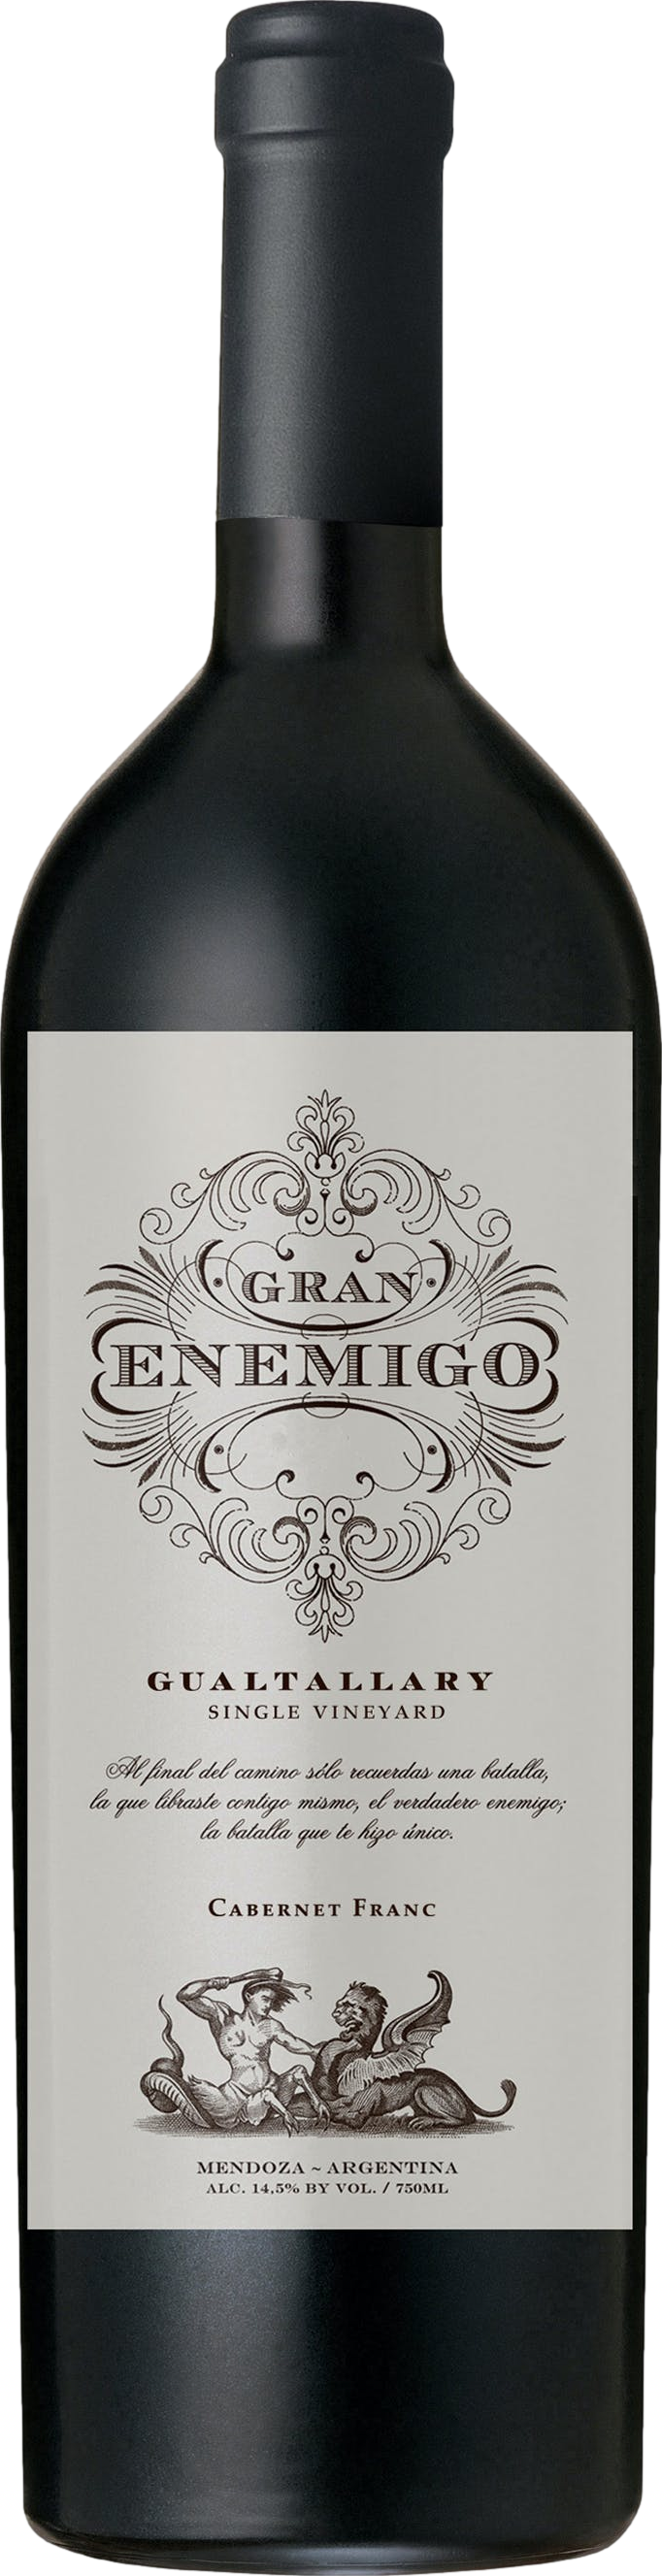 2019/2020 günstig Kaufen-El Enemigo Gran Enemigo Gualtallary 2020. El Enemigo Gran Enemigo Gualtallary 2020 . 